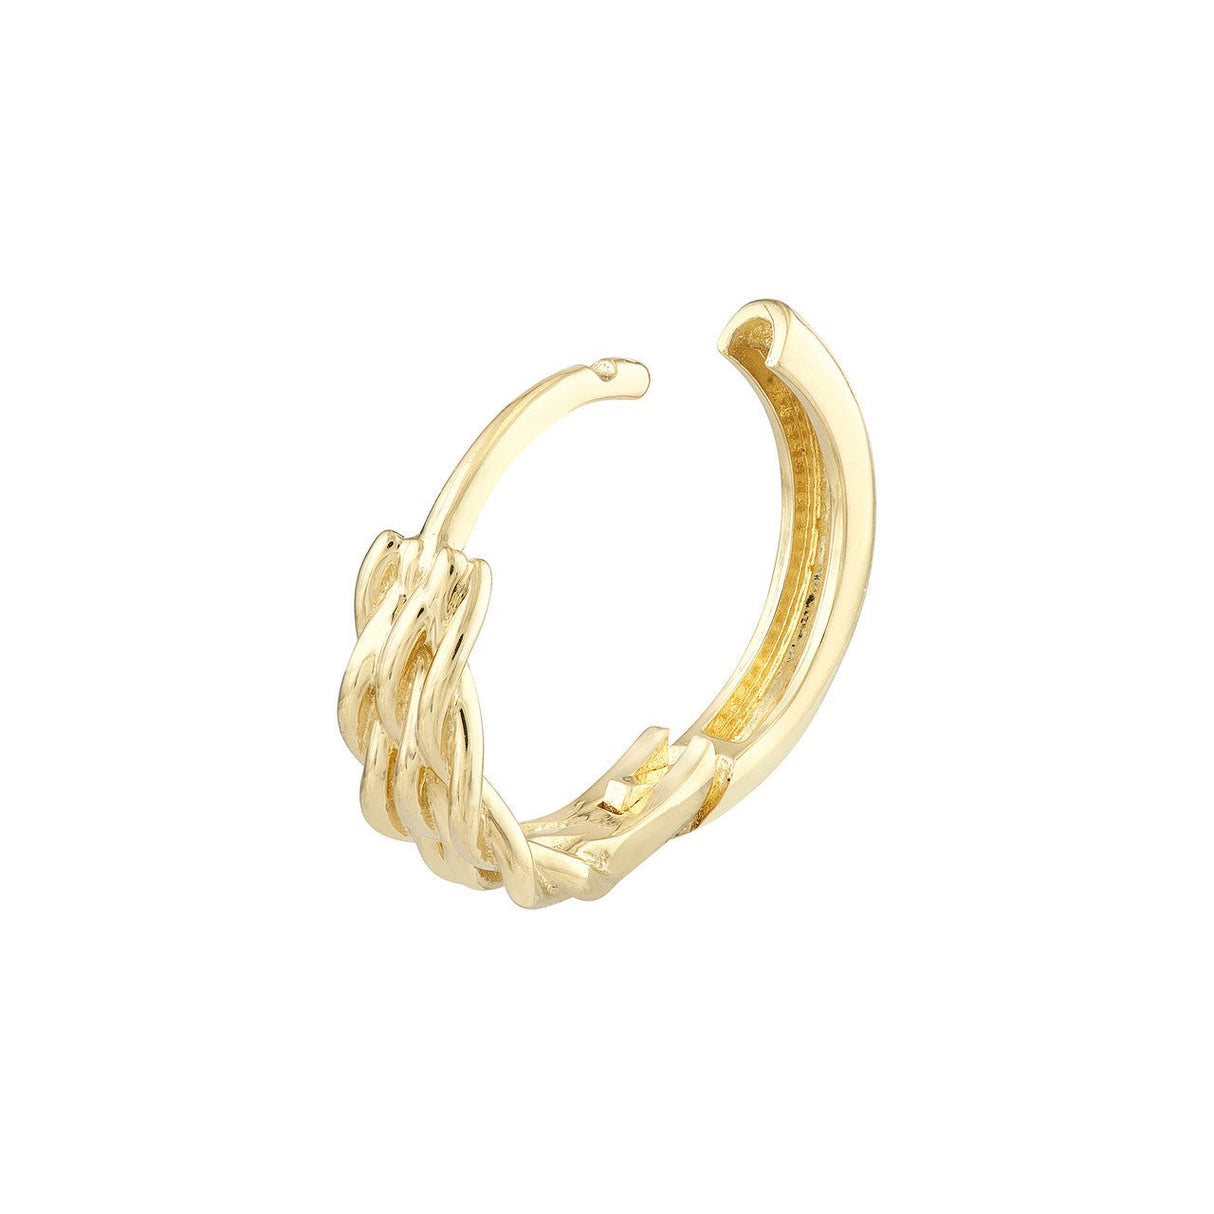 14K Solid Gold 3mm 1/2 Basket Weave Hoop Earrings, Gold Hoop Earrings, - Diamond Origin